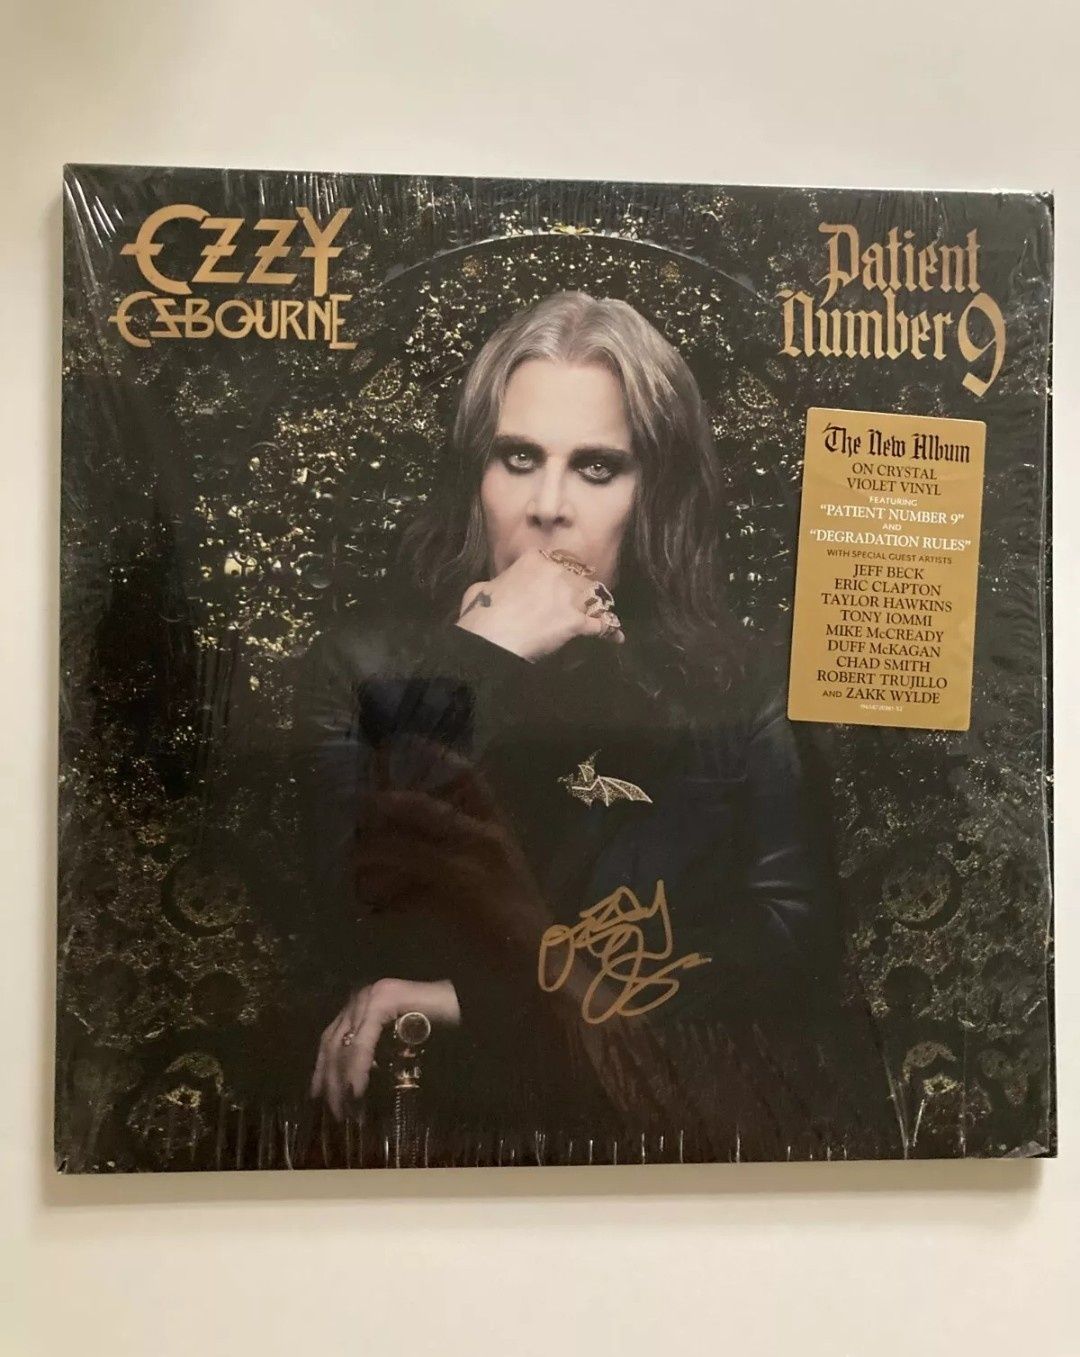 Виниловая пластинка с автографом Оззи Осборна. Black Sabbath.